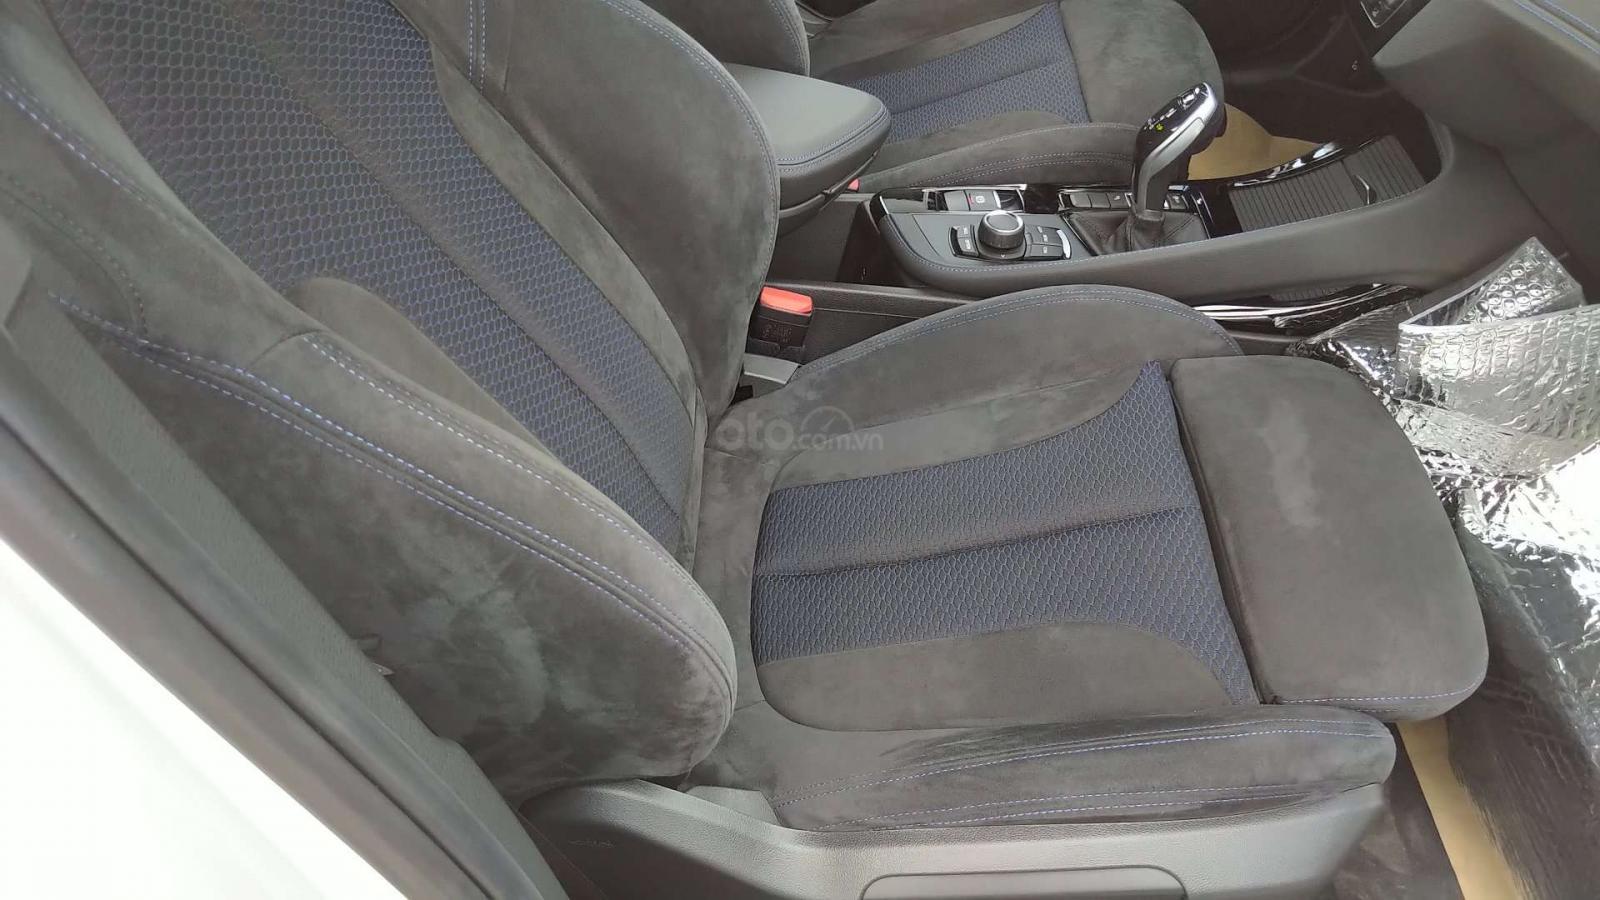 Đánh giá xe BMW X2 sDrive18i 2019 về thiết kế ghế ngồi: Hàng ghế trước.